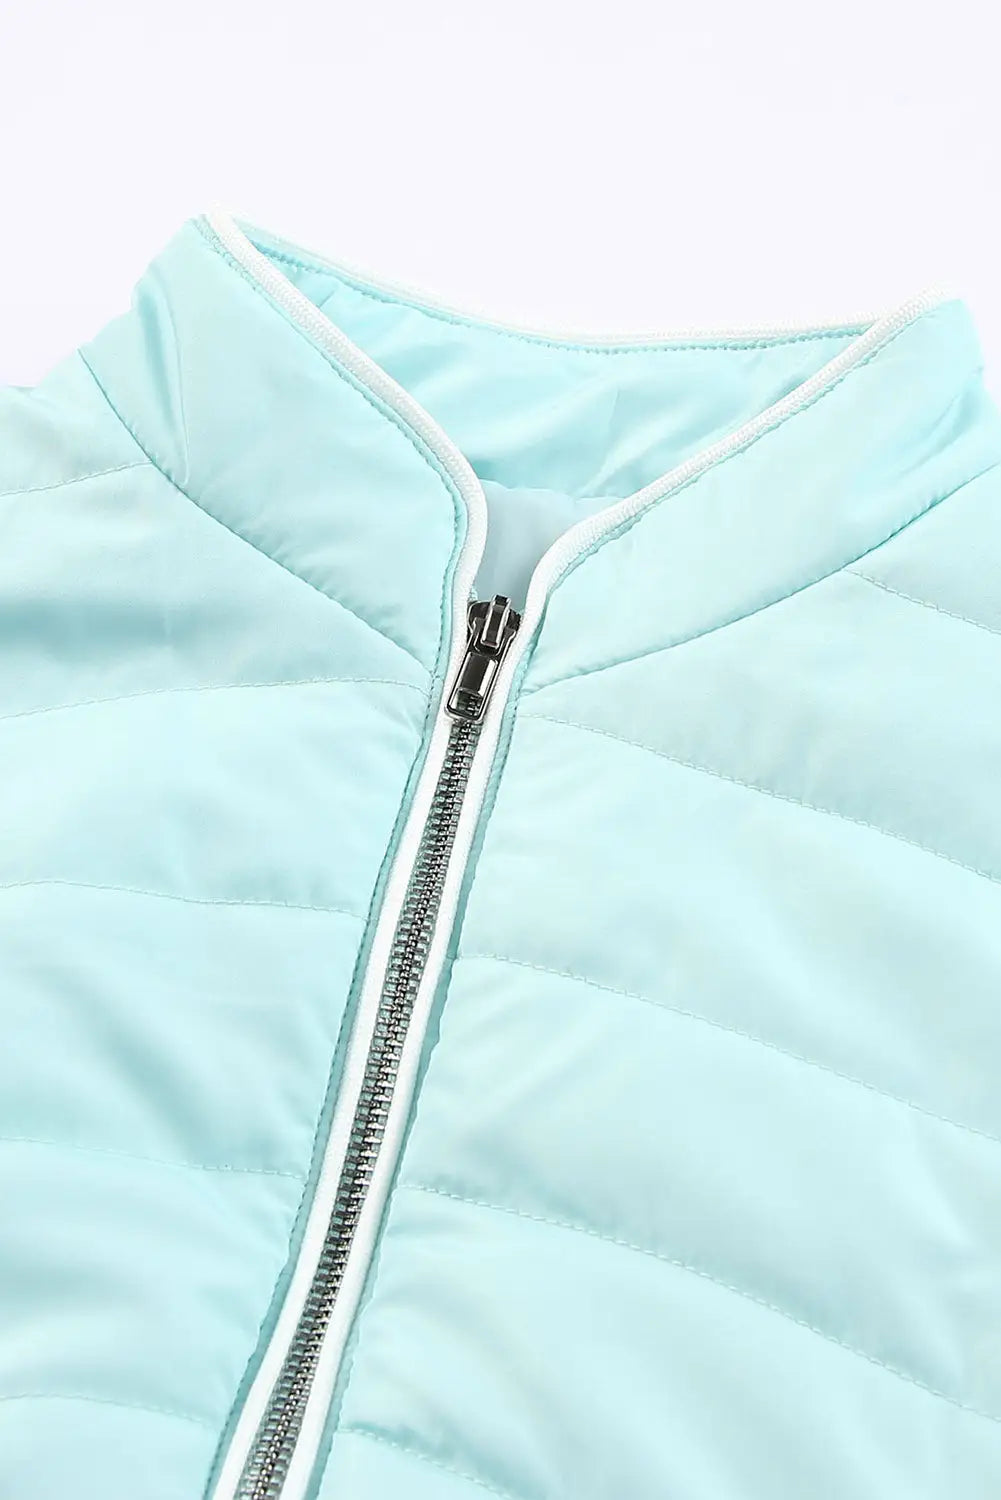 Sky blue zip-up side pockets puffer vest